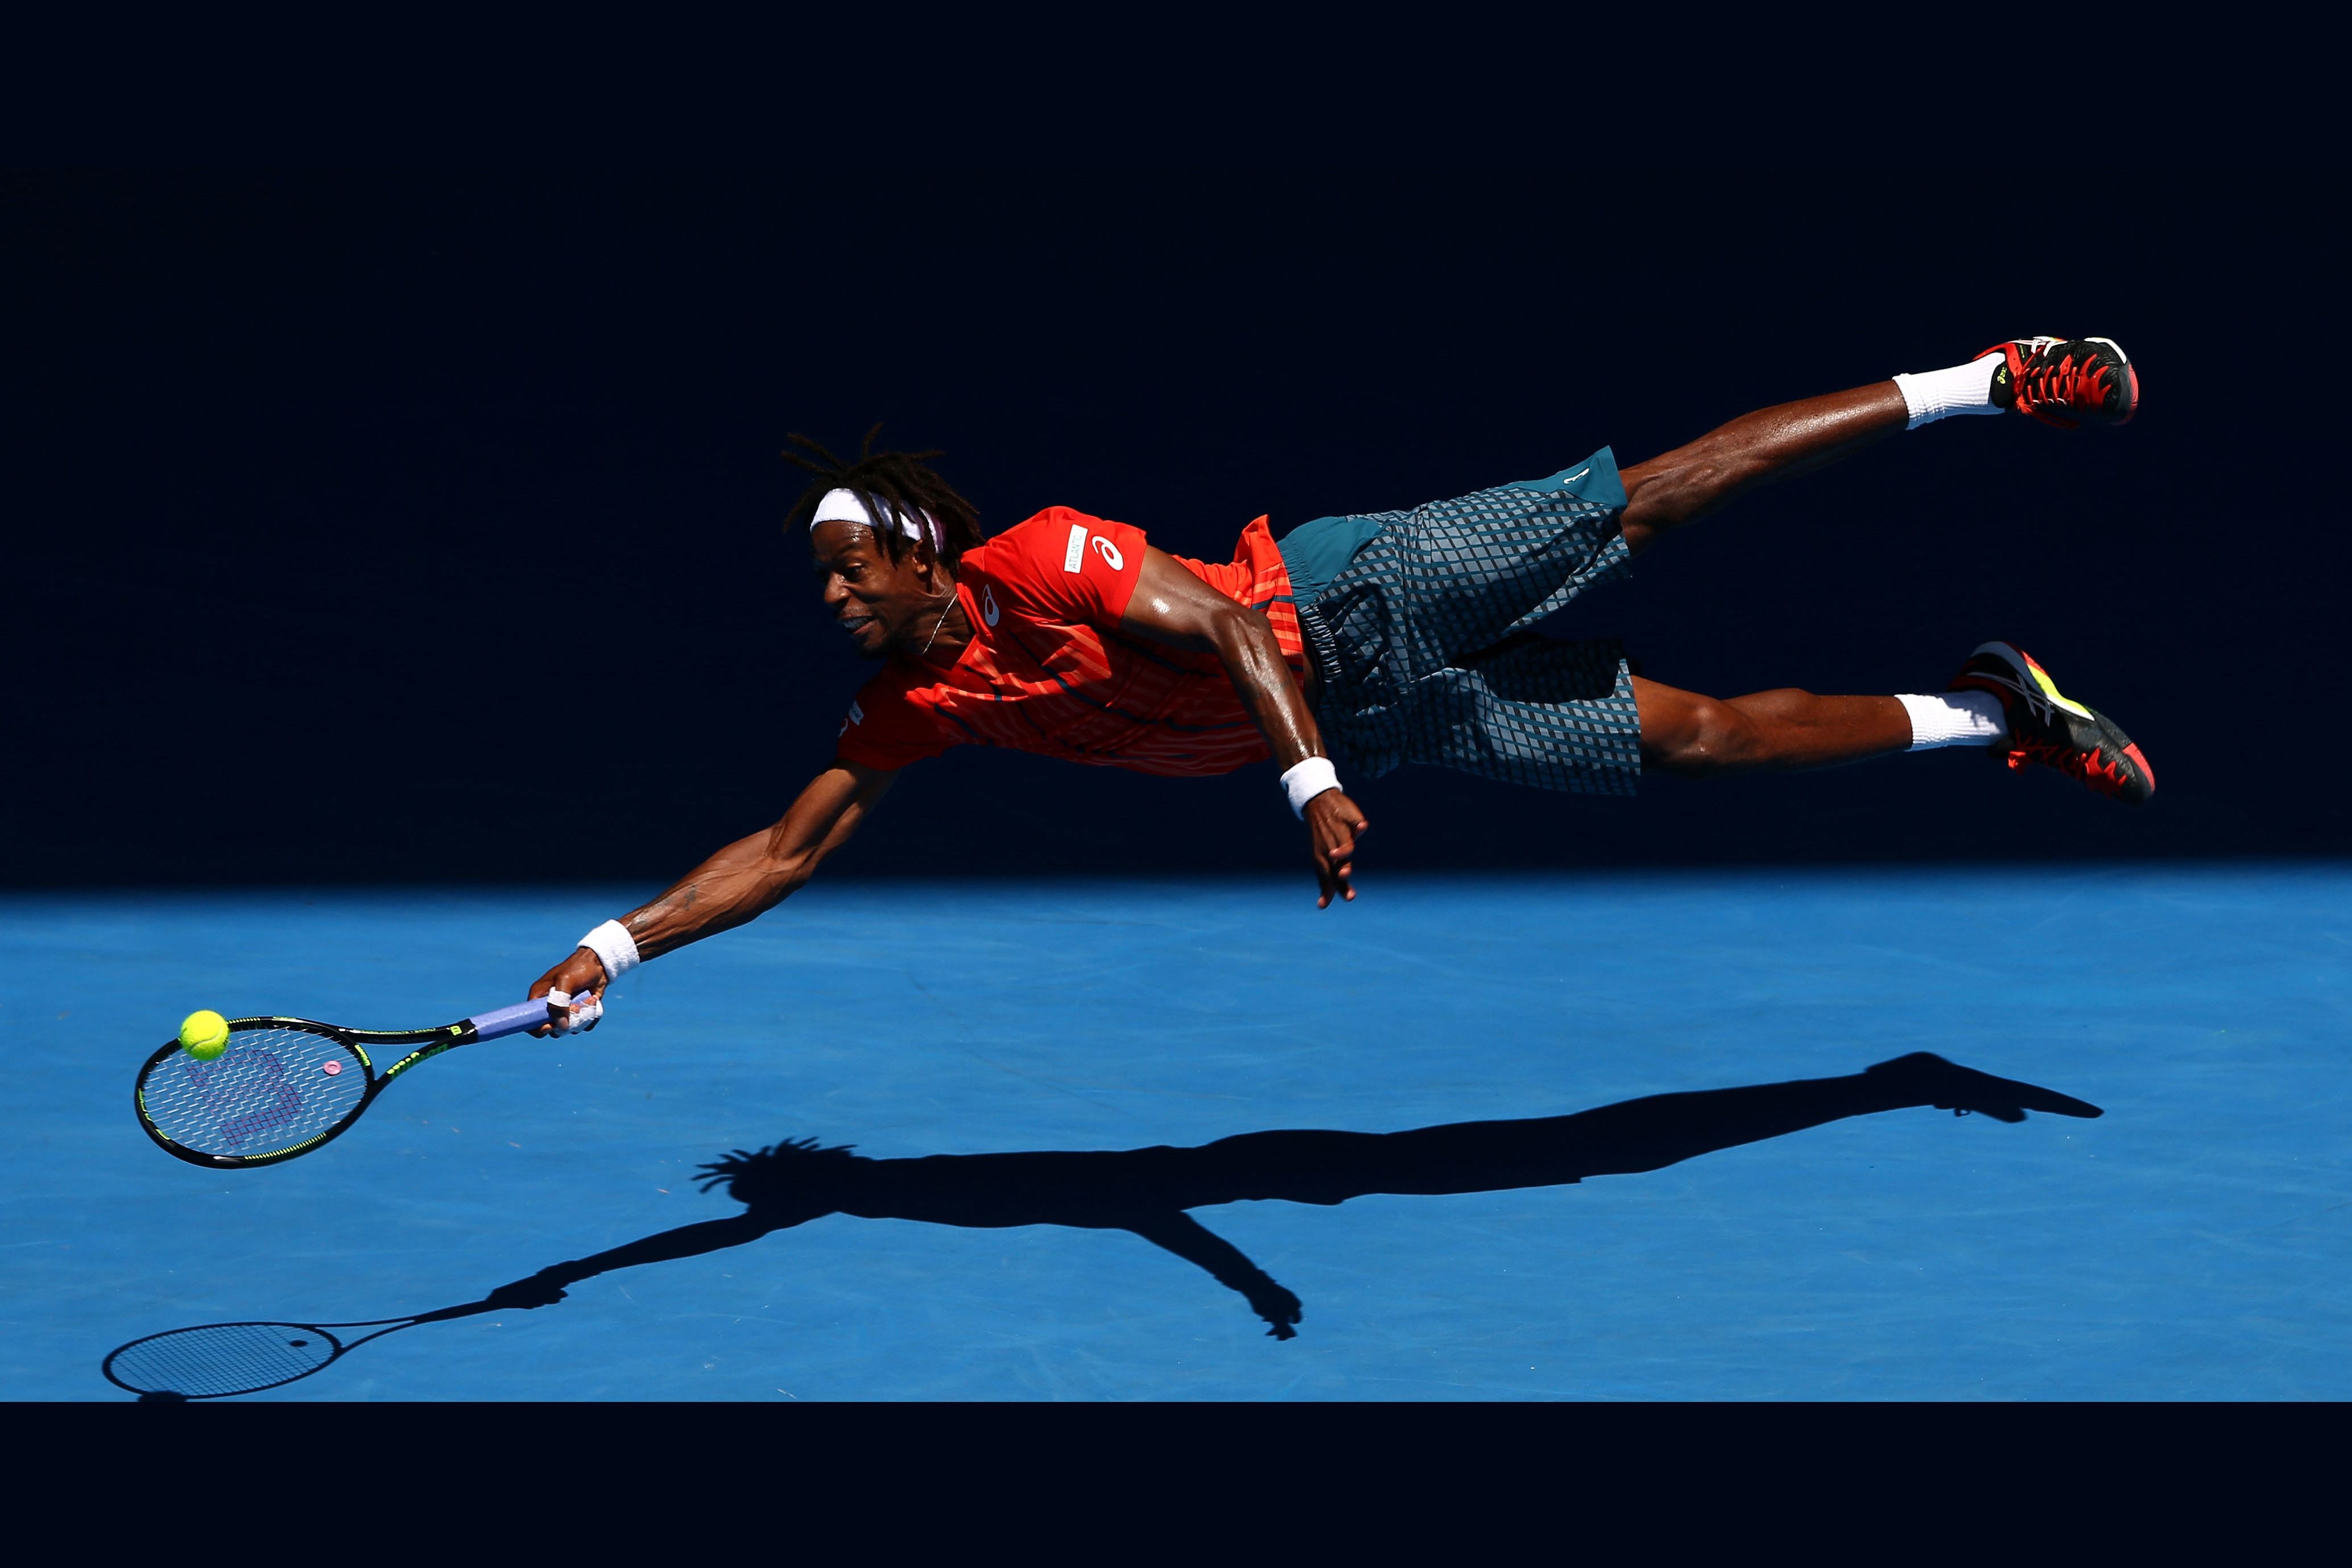 Спортсмены 2016 года. Гаэль Монфис. Гаэль Монфис французский теннисист. Теннисист в прыжке. Спортсмен картинка.